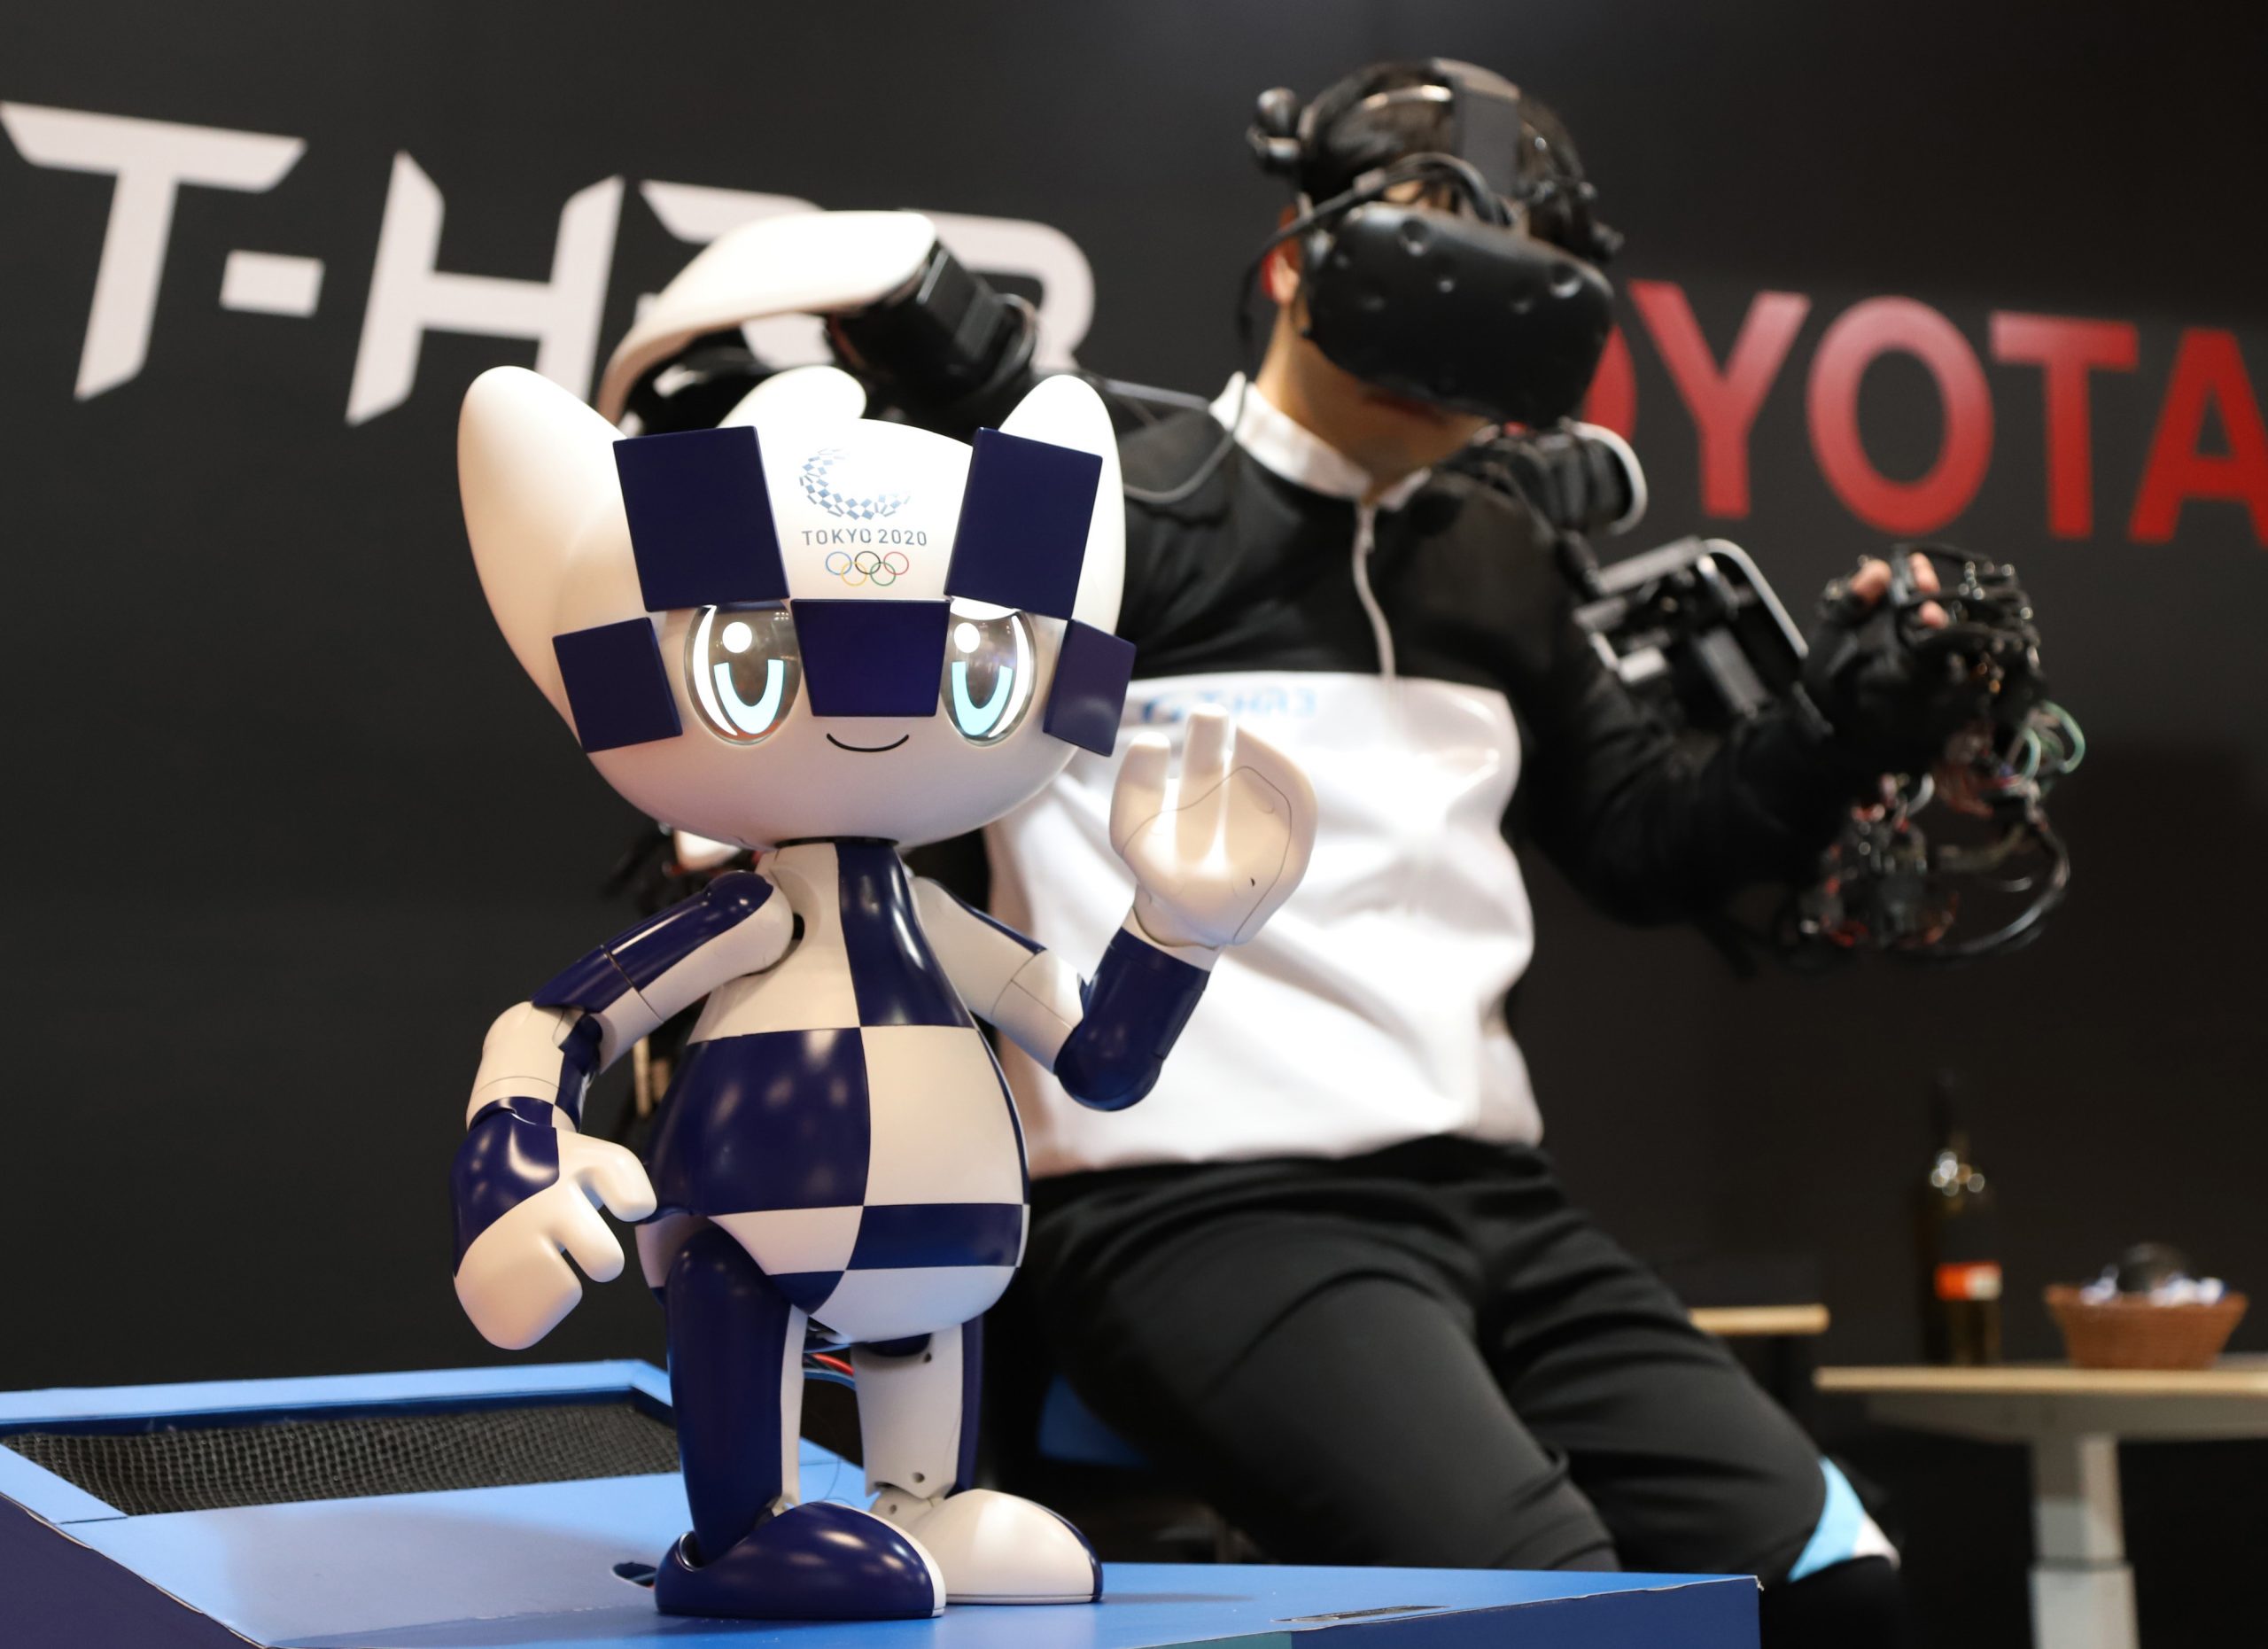 Das Maskottchen der Olympischen Spiele in Tokio als Roboter